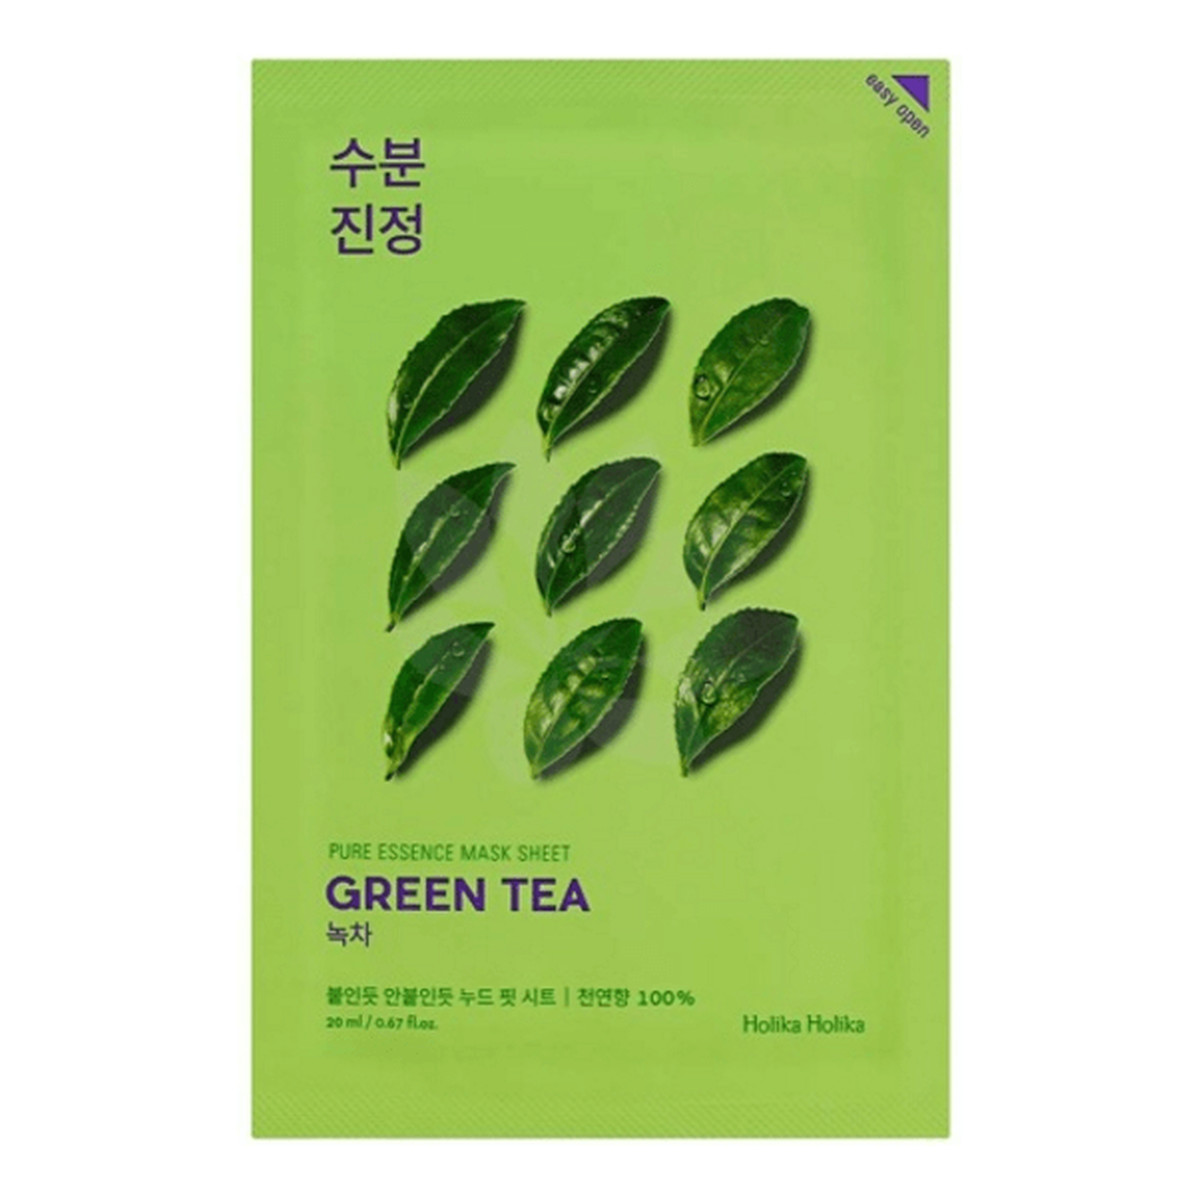 Holika Holika Pure Essence Mask Sheet Green Tea maseczka z ekstraktem z zielonej herbaty łagodząca 1 sztuka 20ml